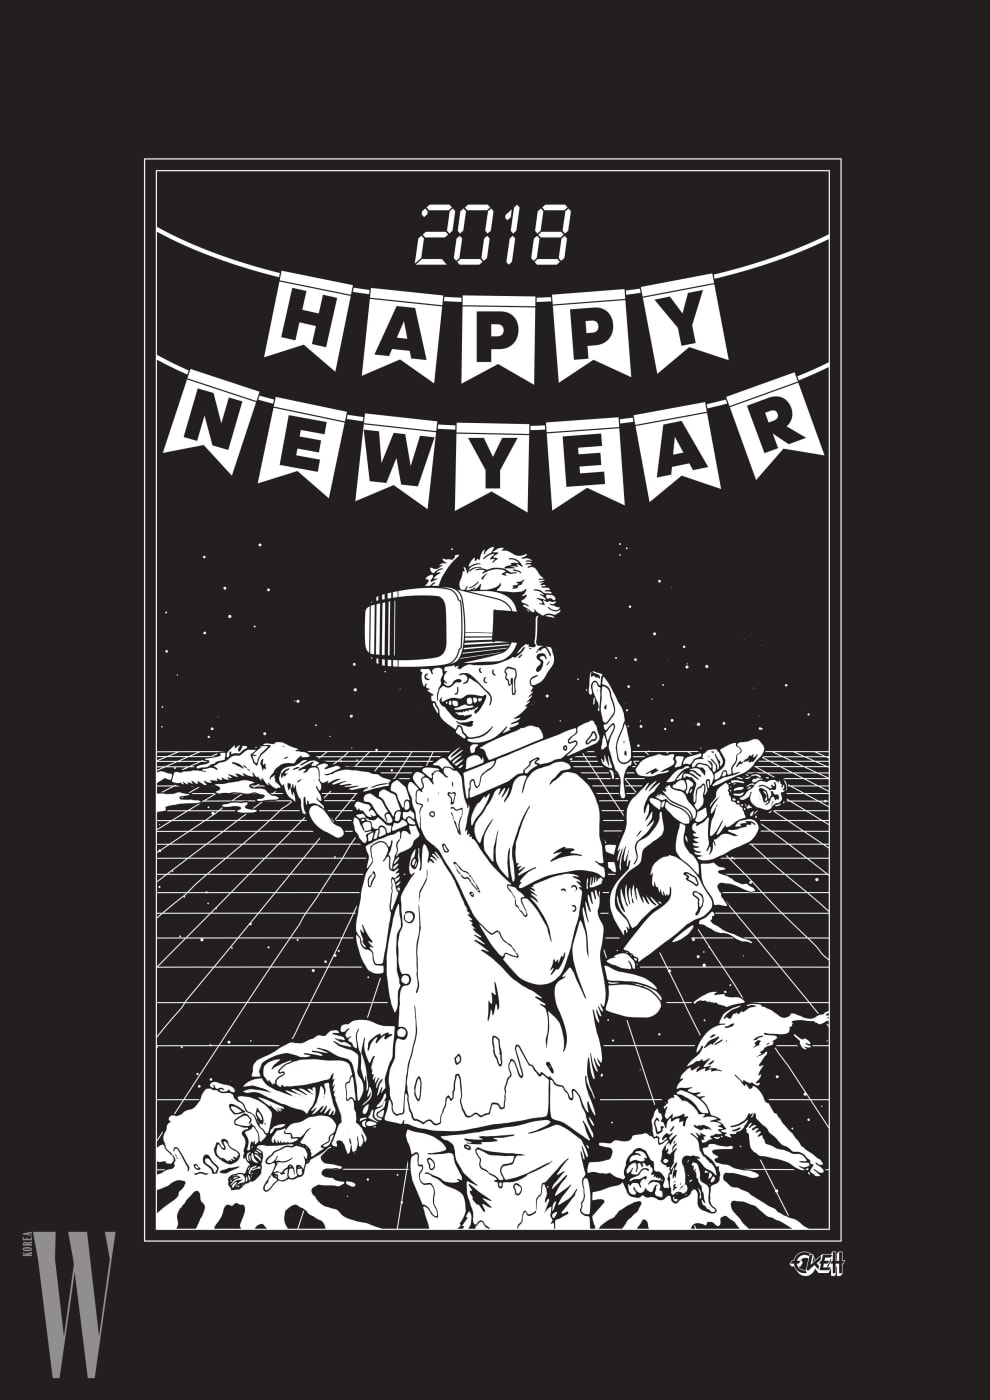 미래적 느낌을 옥근남 특유의 그림체로 풀어낸 ‘Happy New Year’ 카드.